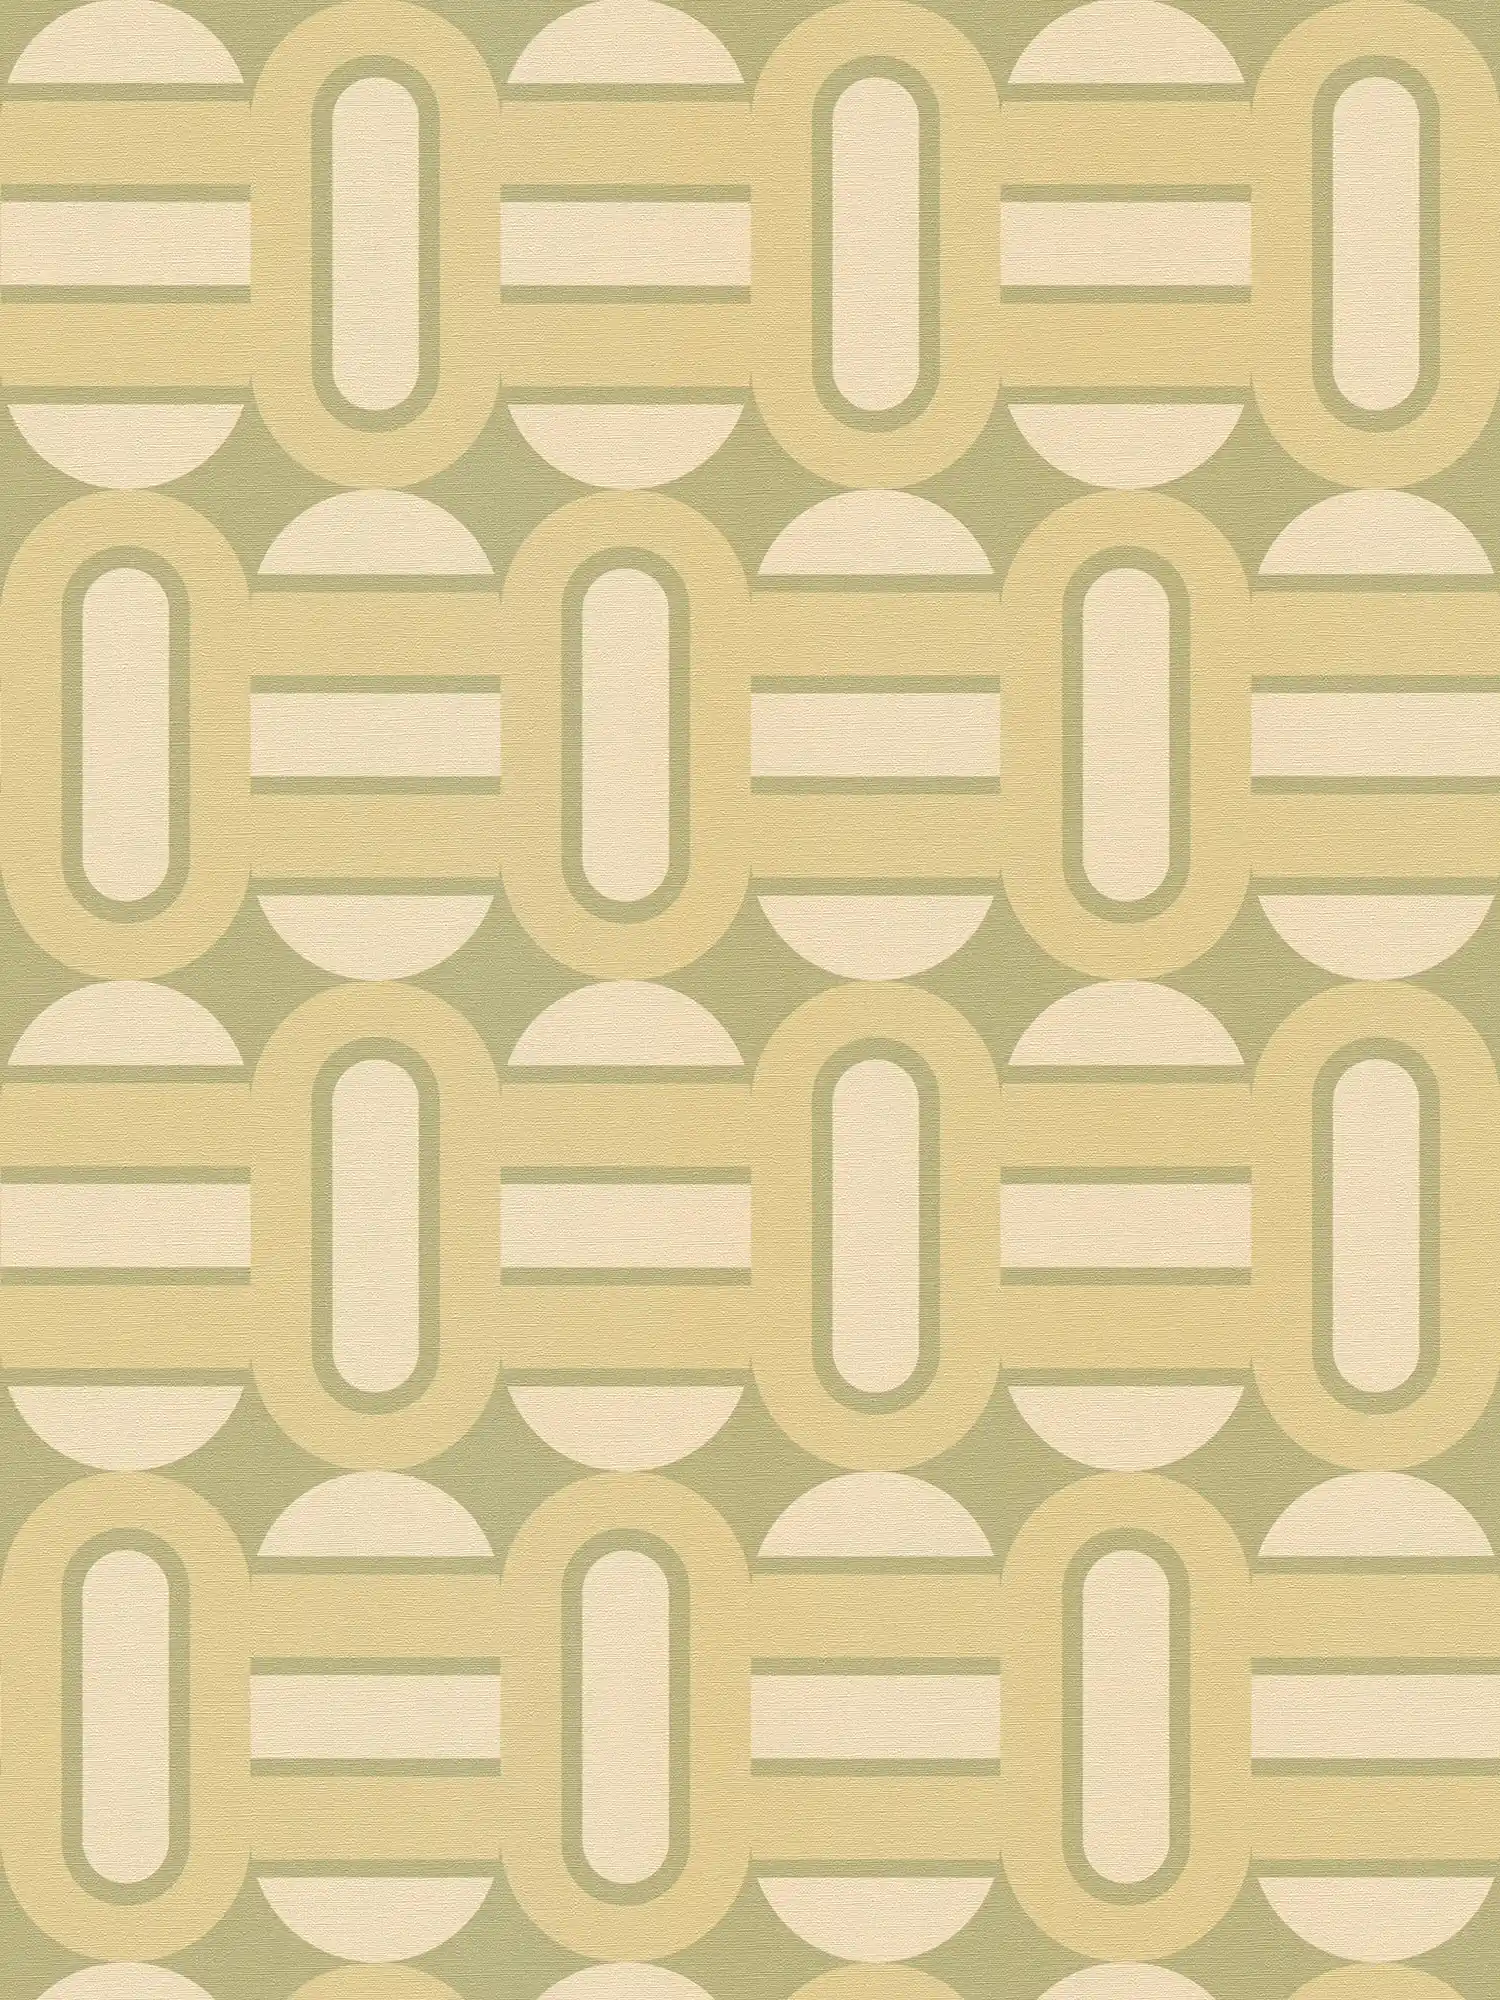 Vliesbehang in retrostijl met patroon van ovalen en balken - groen, crème
